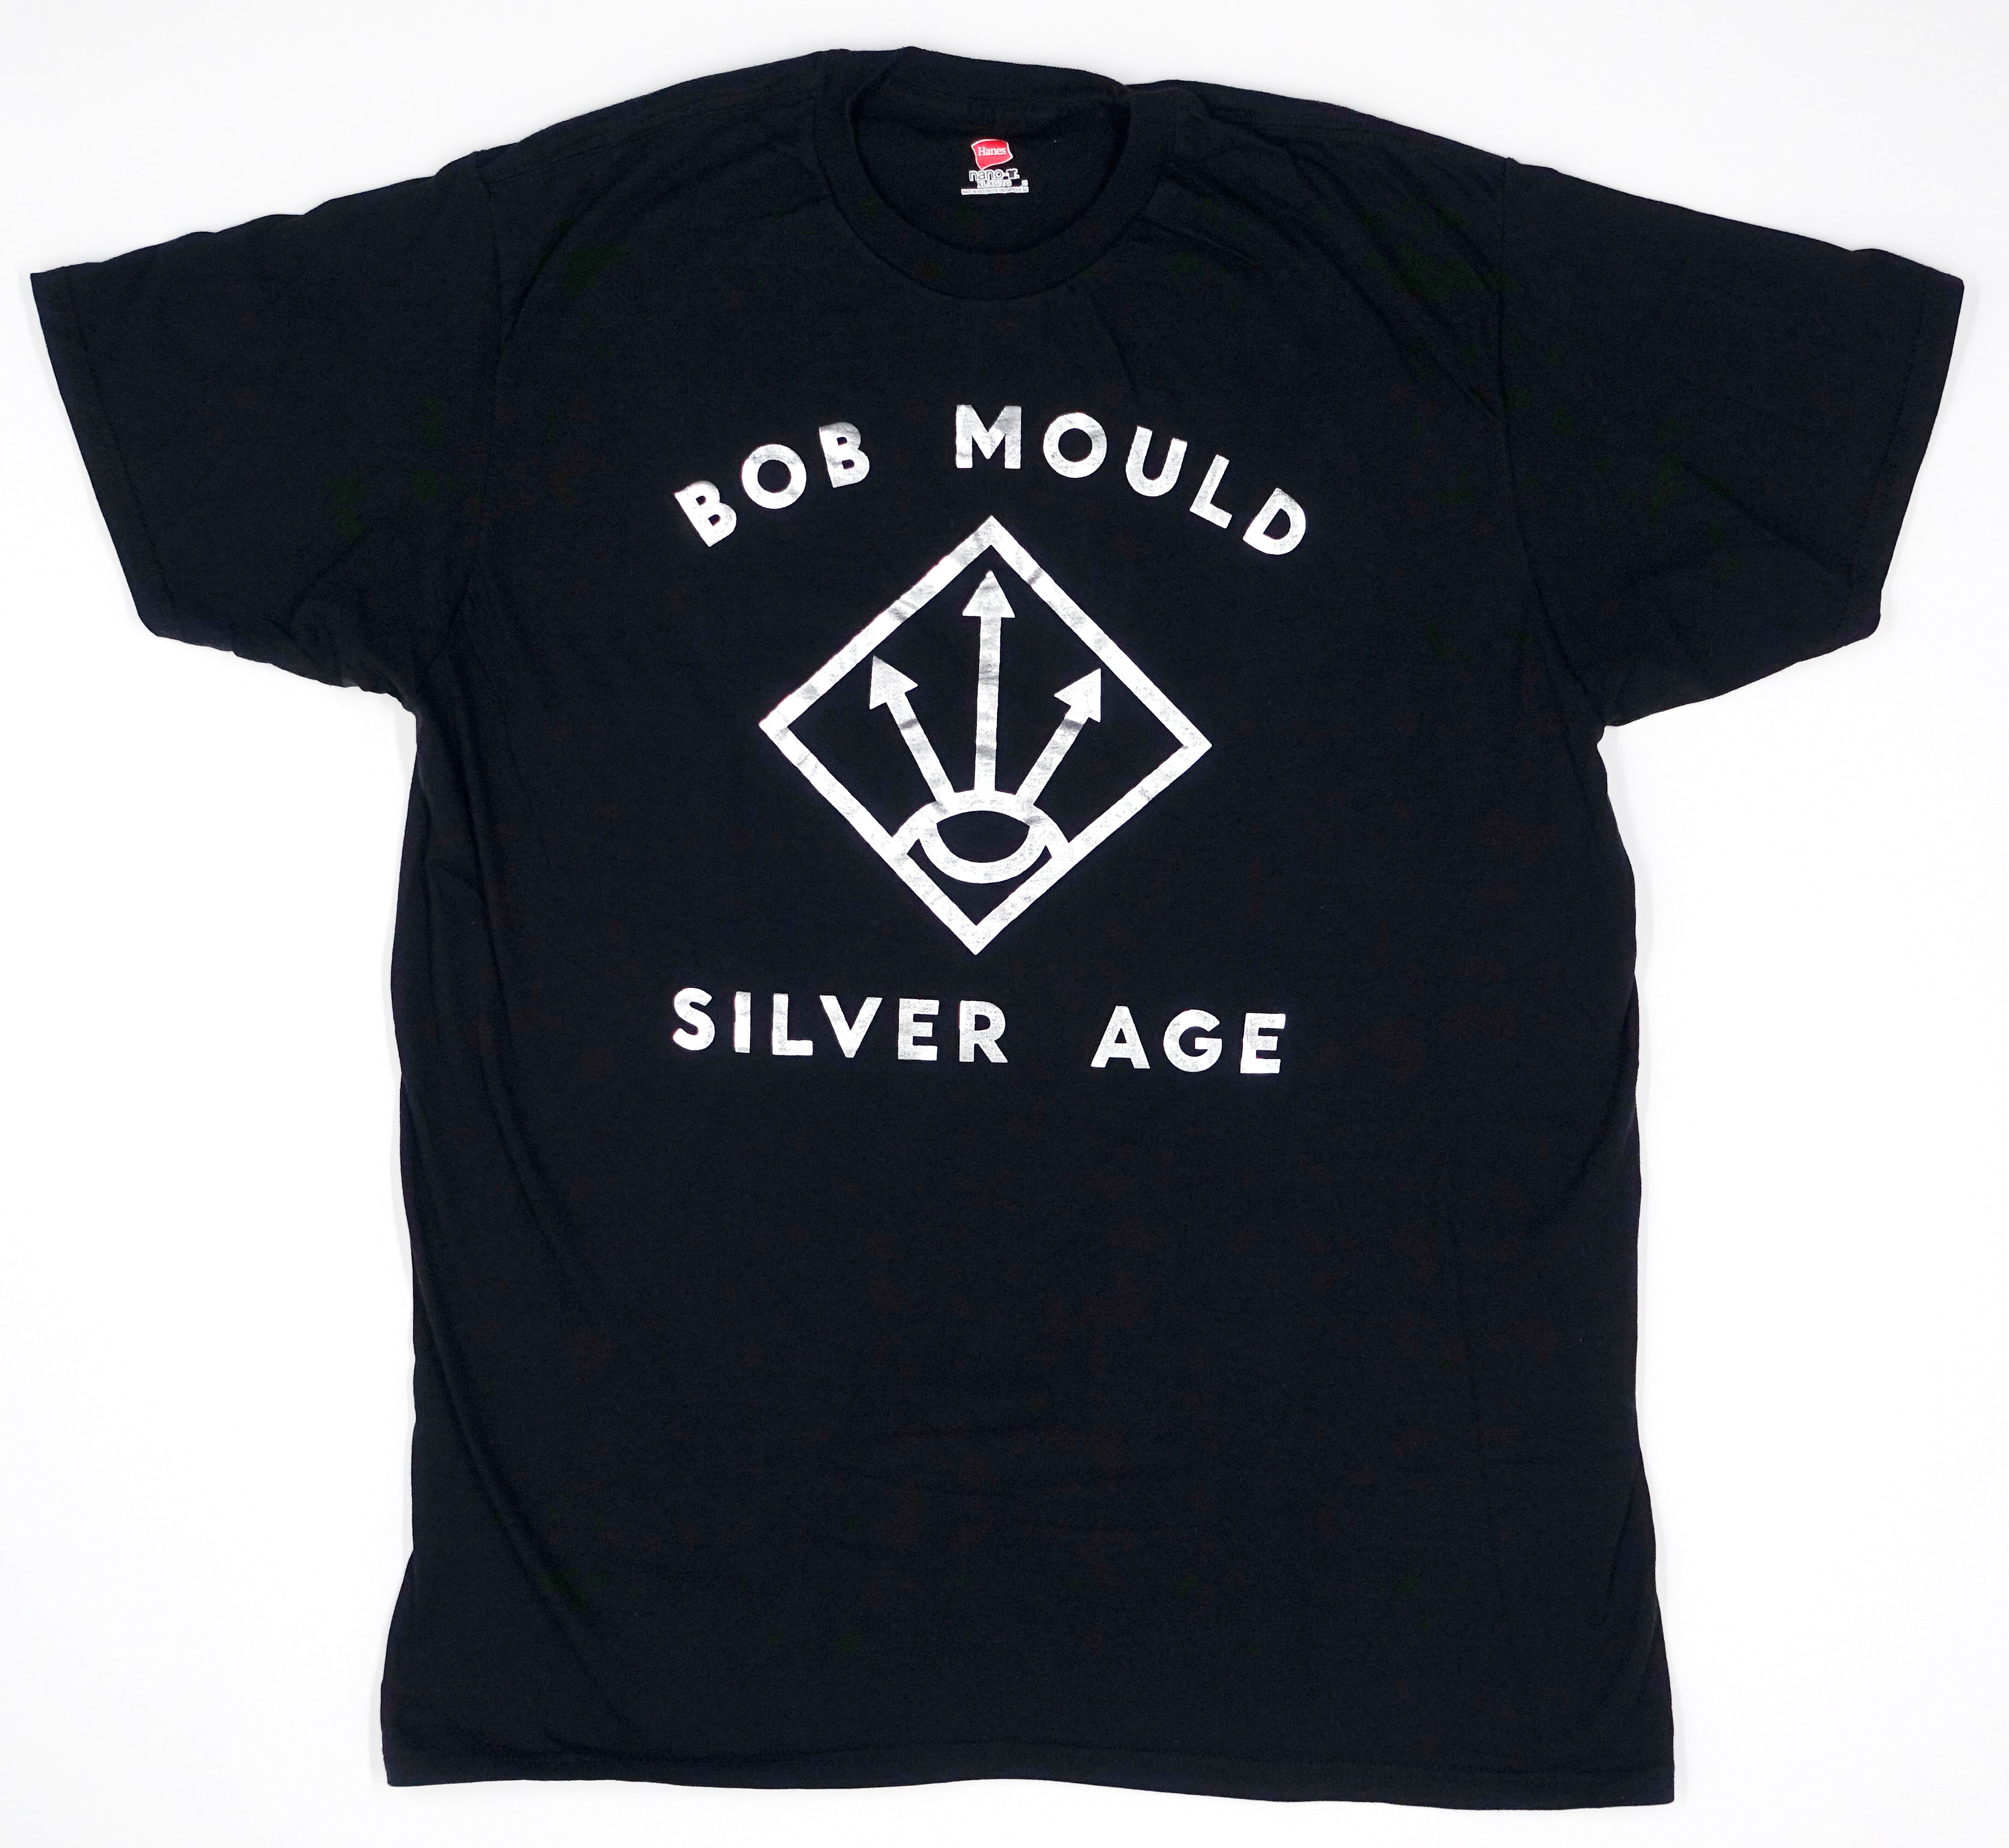 Bob Mould - Silver Age 2012 Tour Shirt Size XL